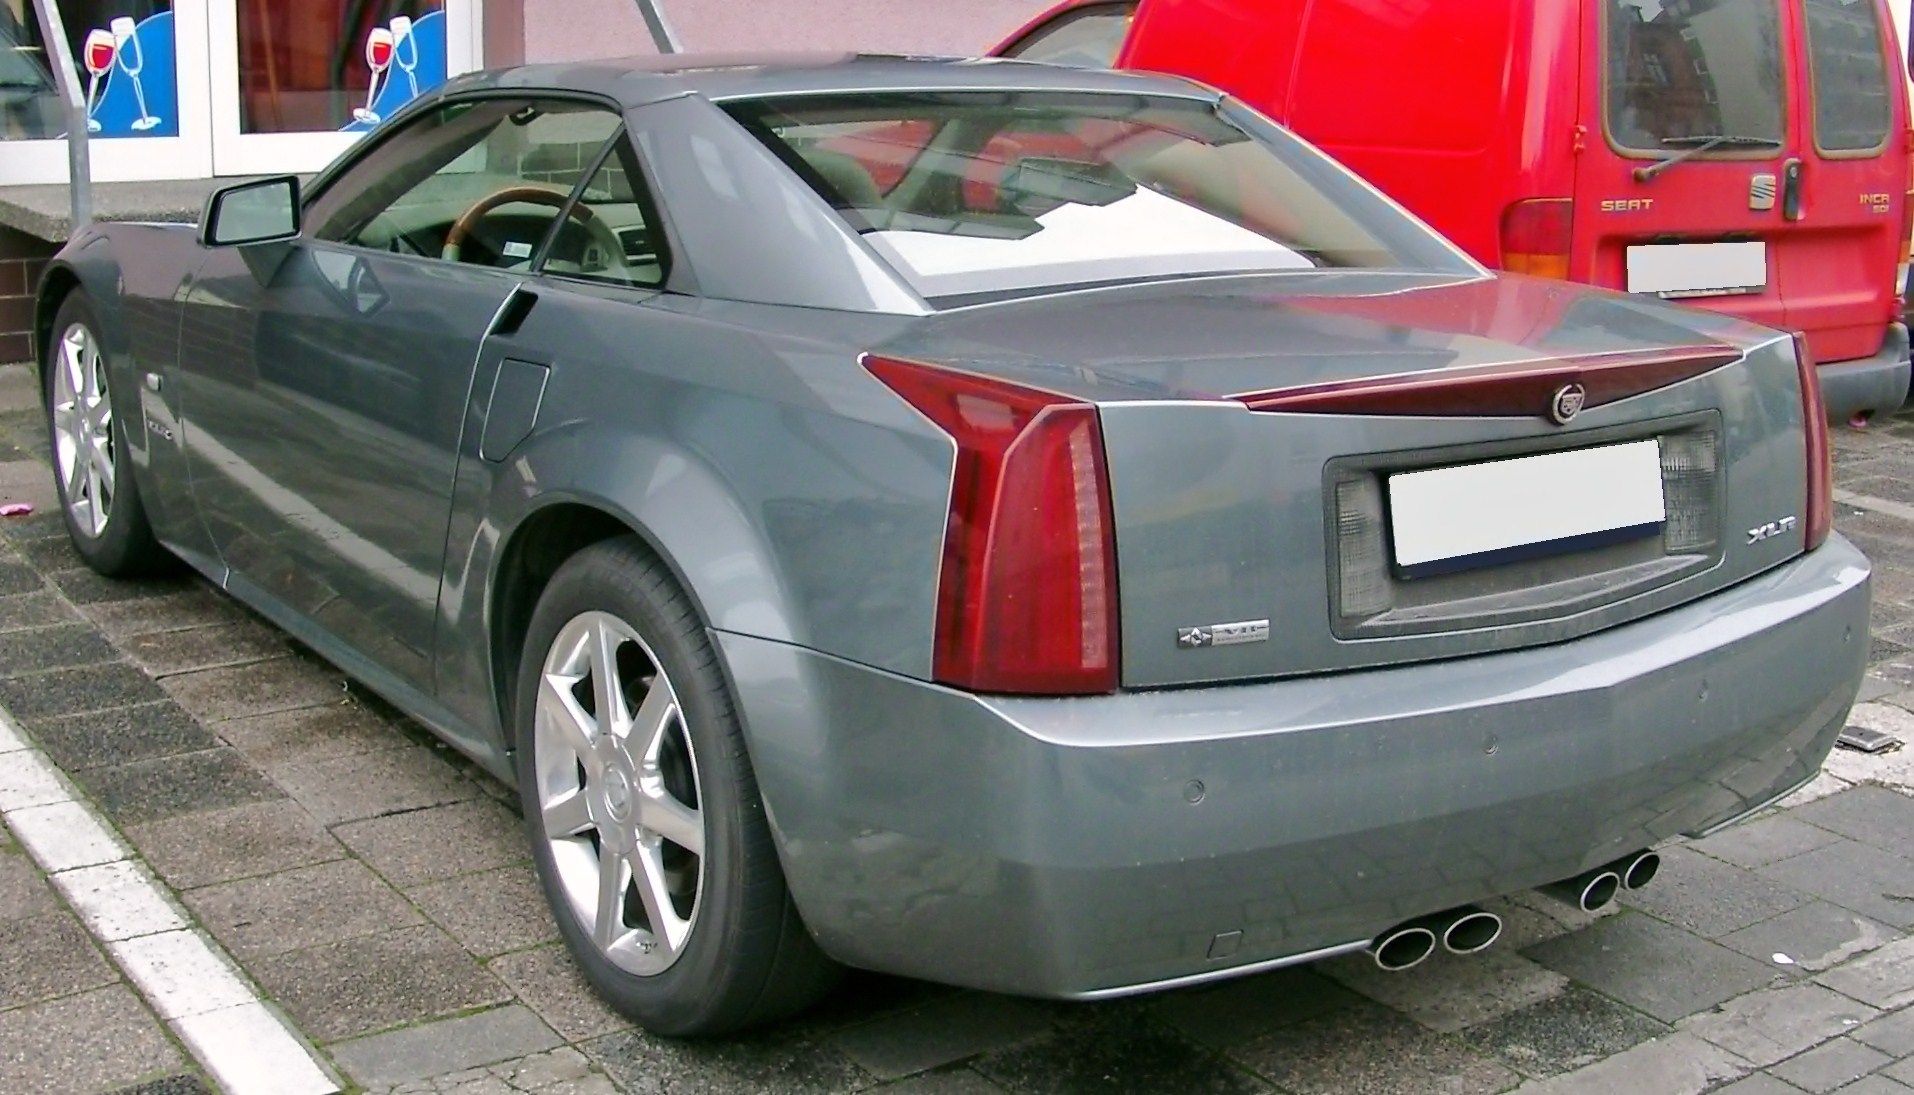 The 2009 Cadillac XLR rear view.